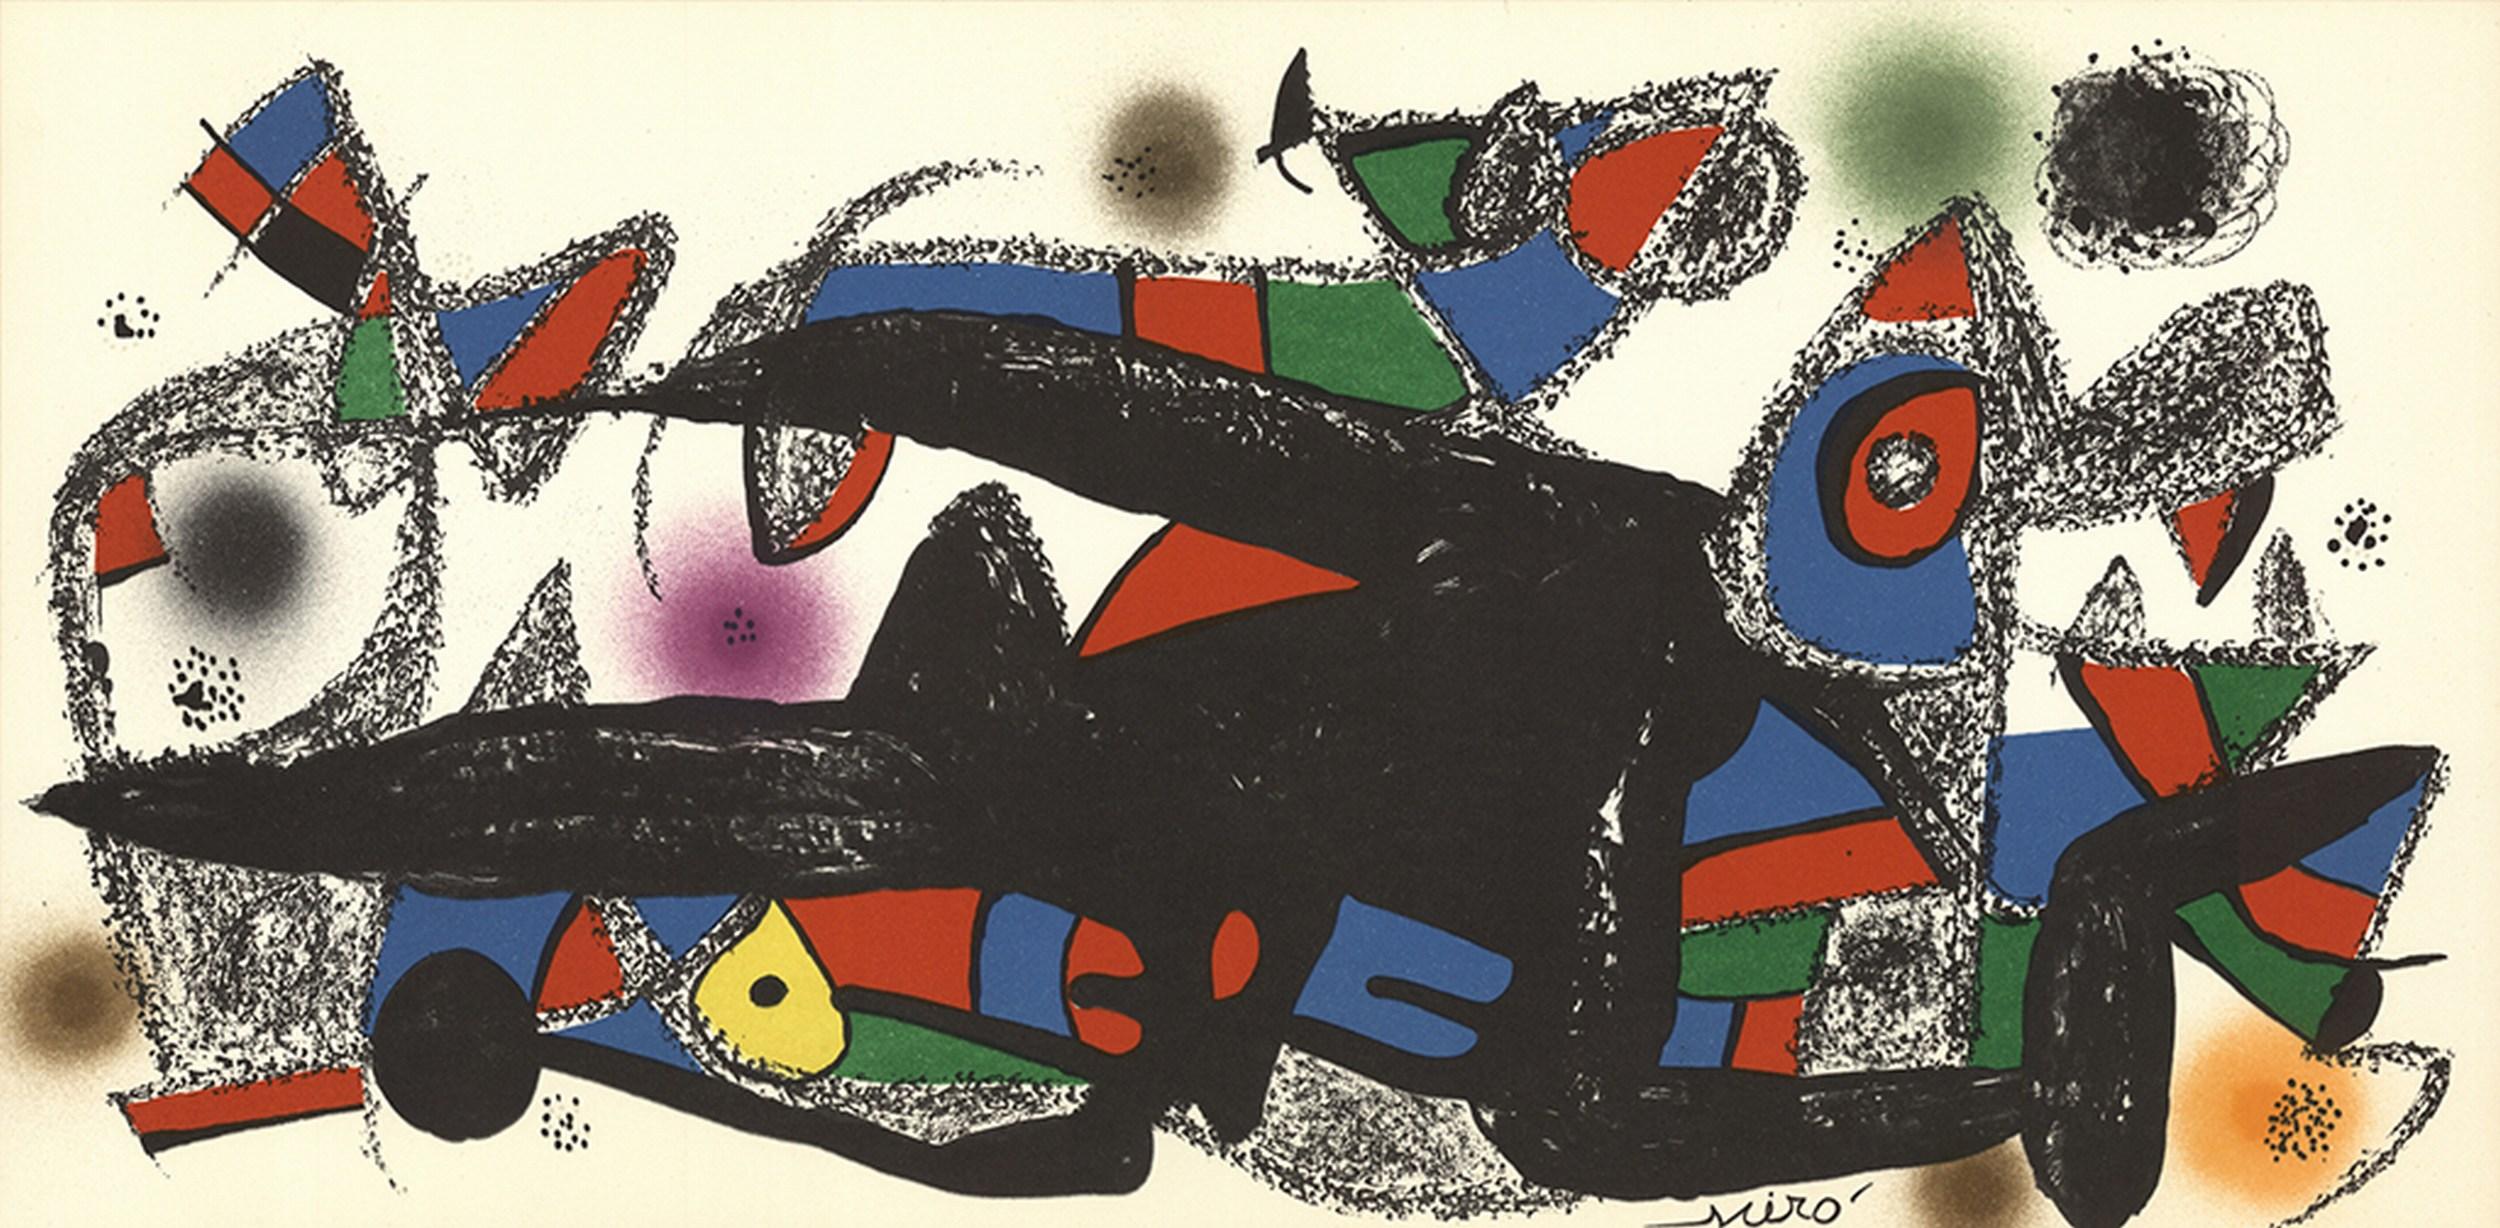 Joan Miró Abstract Print - Escultor - Denmark